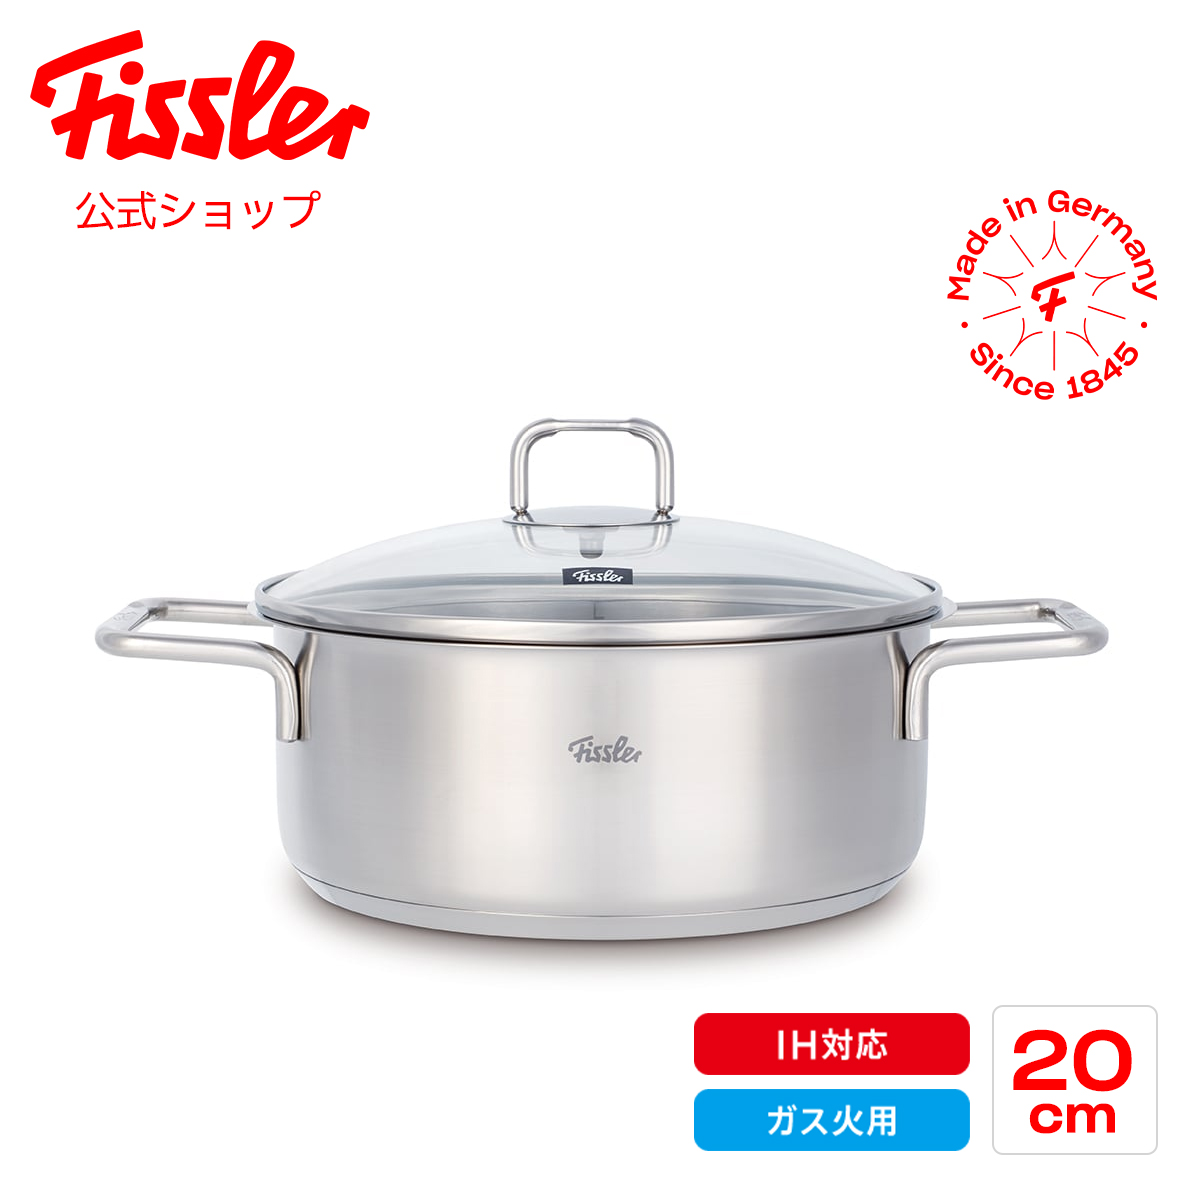 売れ済公式店 Fissler ロンドン 20cm キャセロール 調理器具